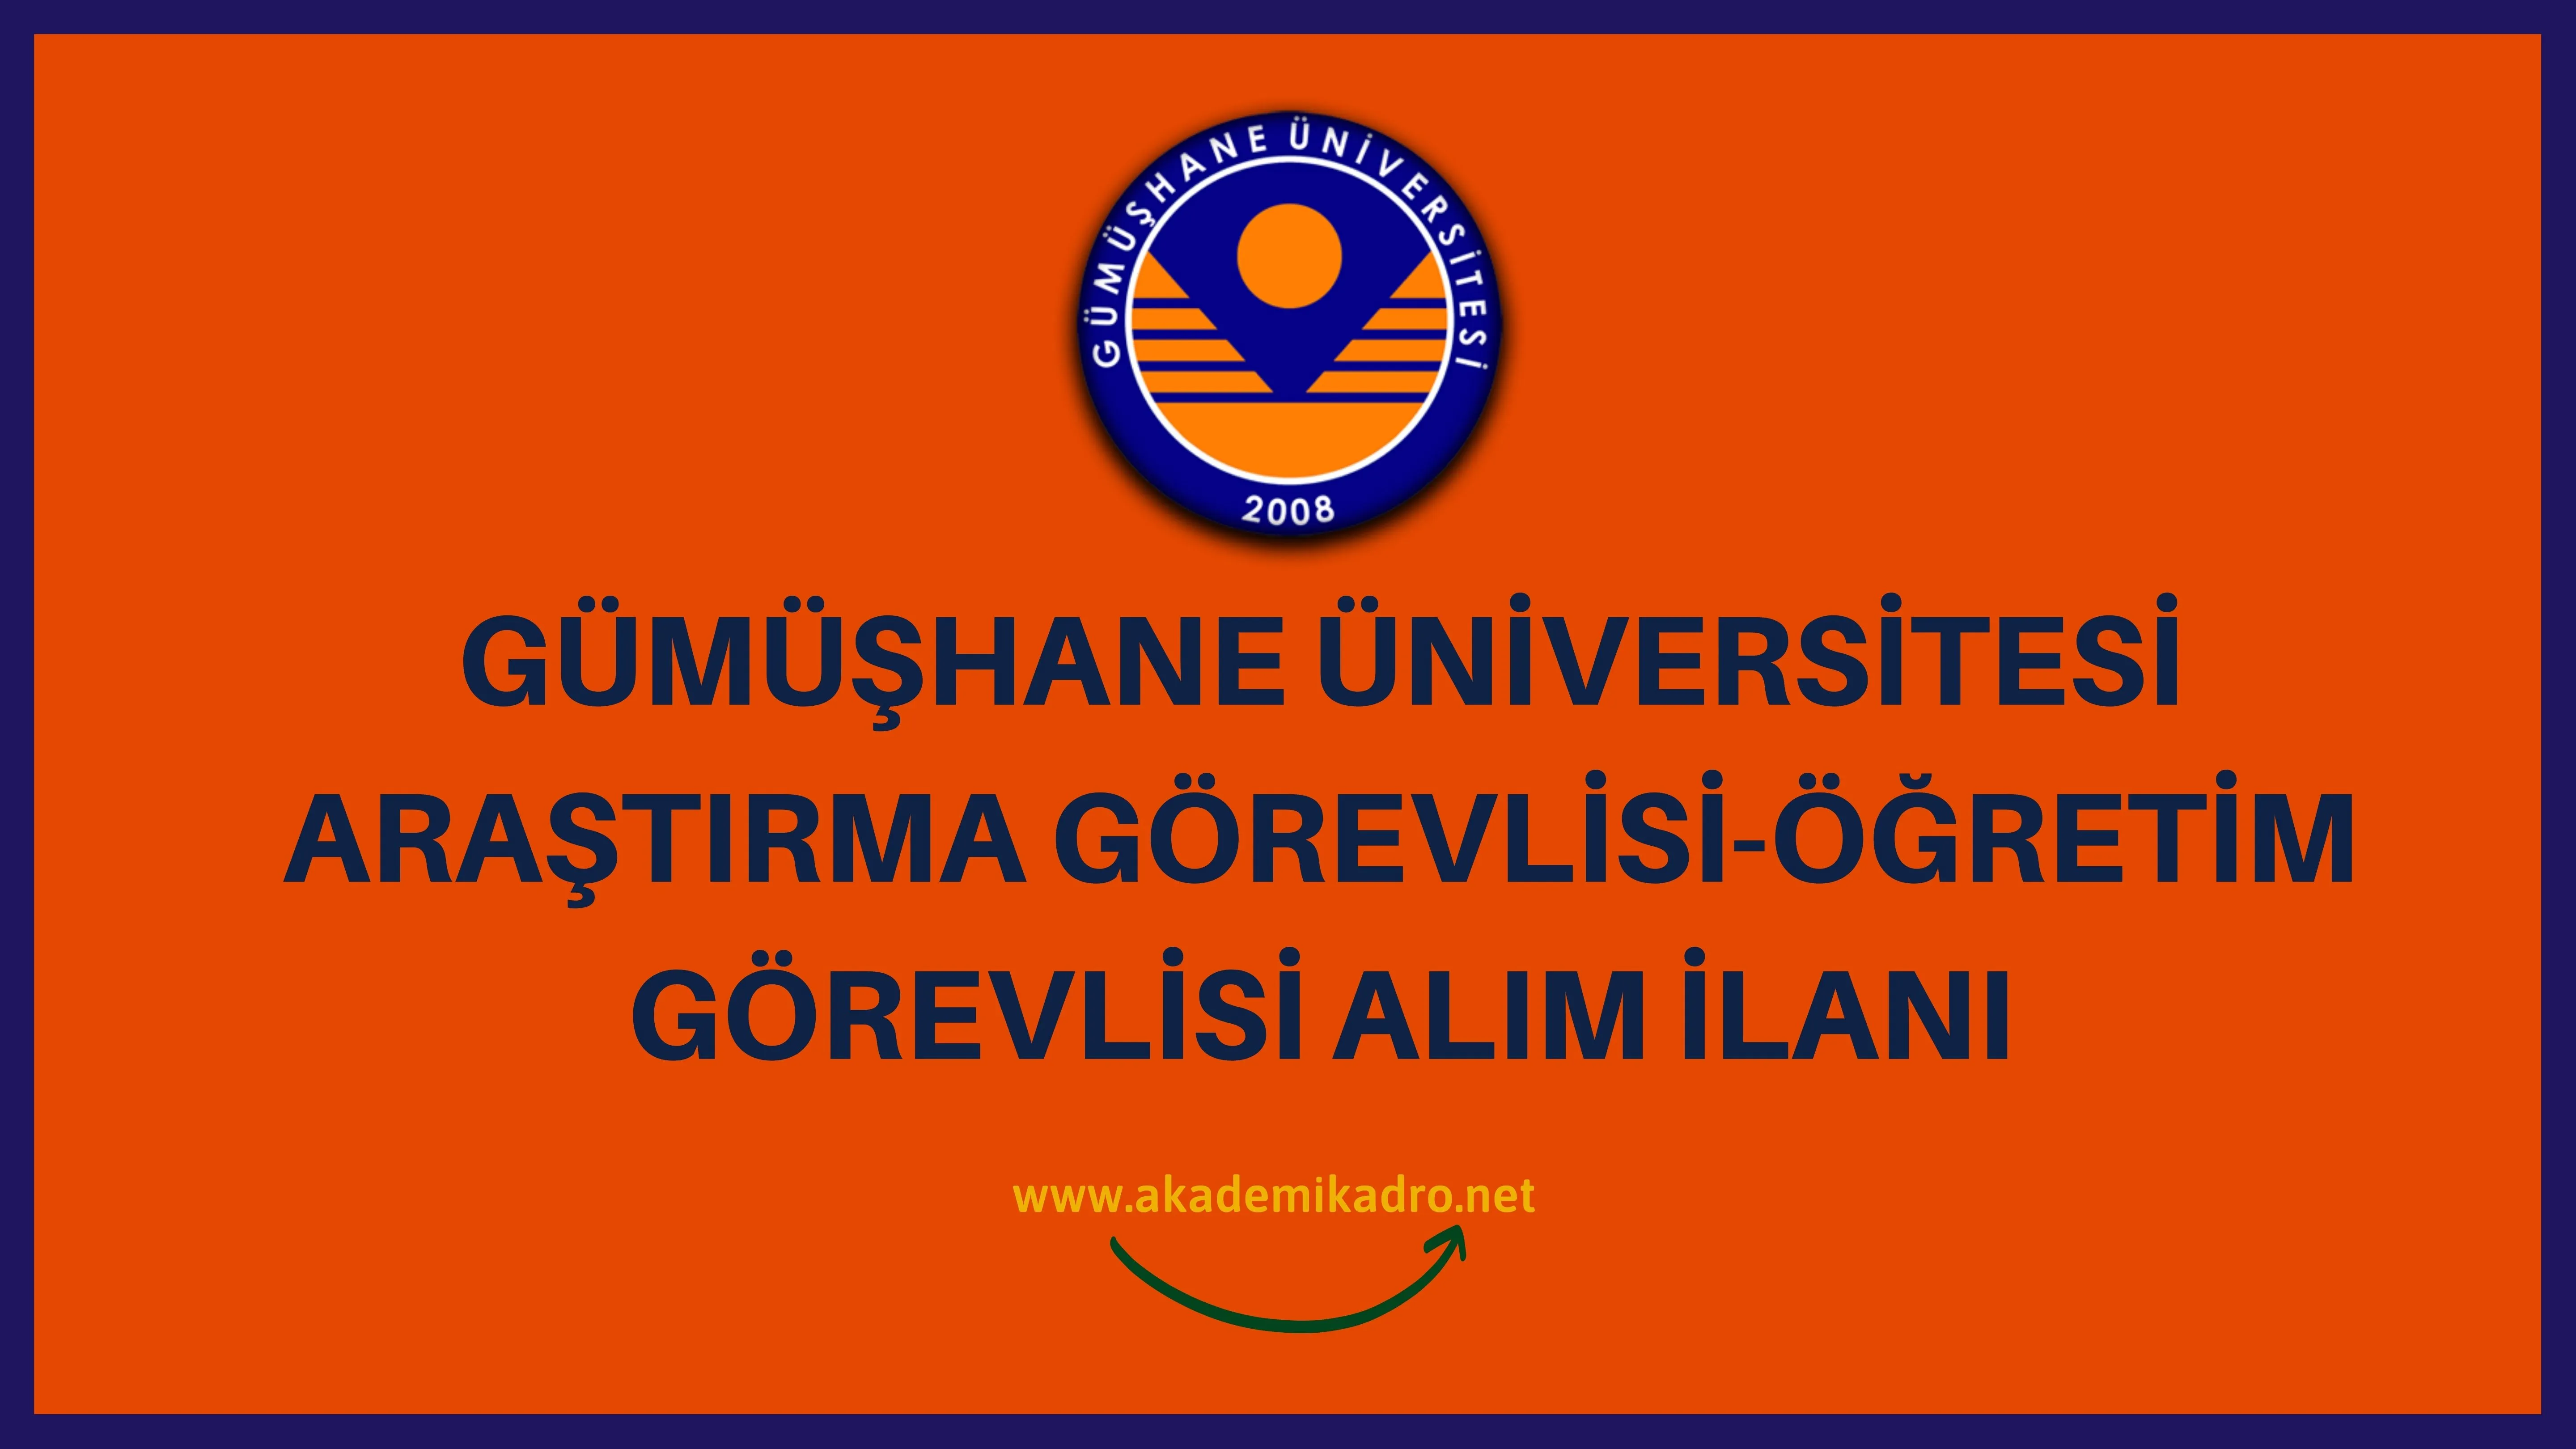 Gümüşhane Üniversitesi 11 Araştırma Görevlisi ve 7 Öğretim Görevlisi alacaktır. Son başvuru tarihi 02 Ocak 2023